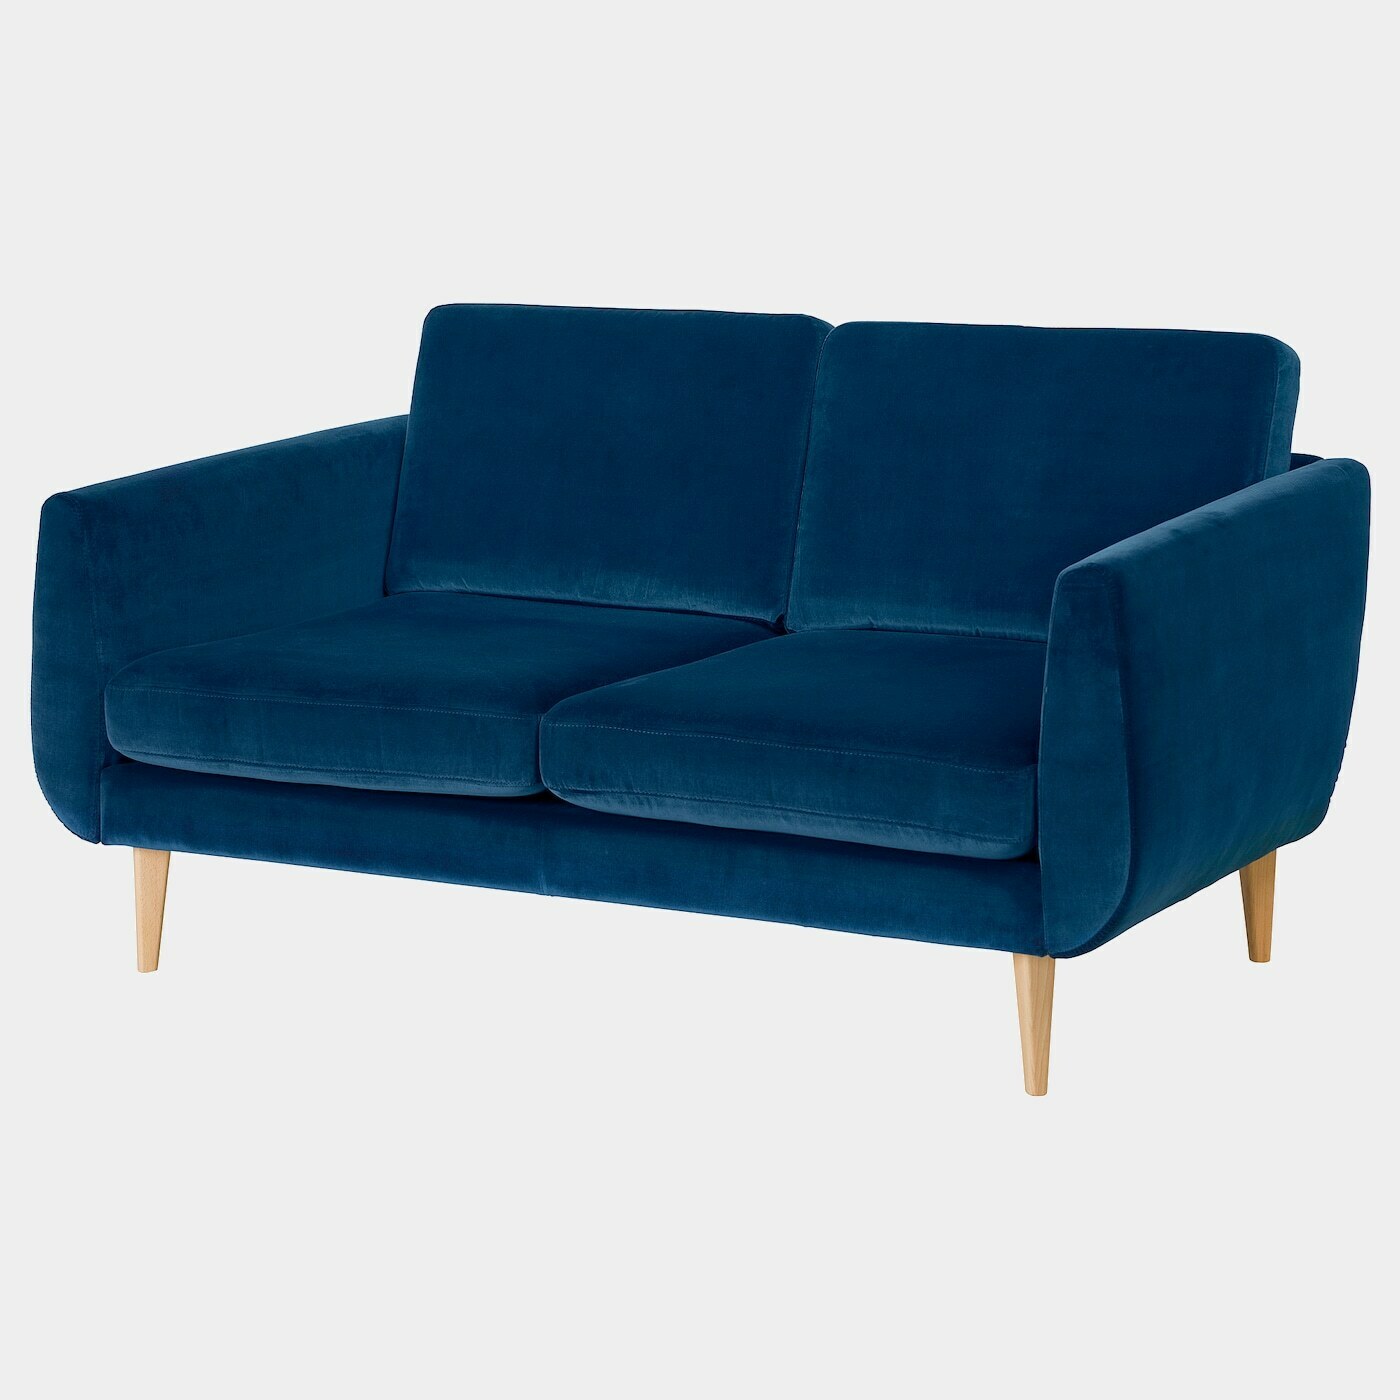 SMEDSTORP 2er-Sofa  -  - Möbel Ideen für dein Zuhause von Home Trends. Möbel Trends von Social Media Influencer für dein Skandi Zuhause.